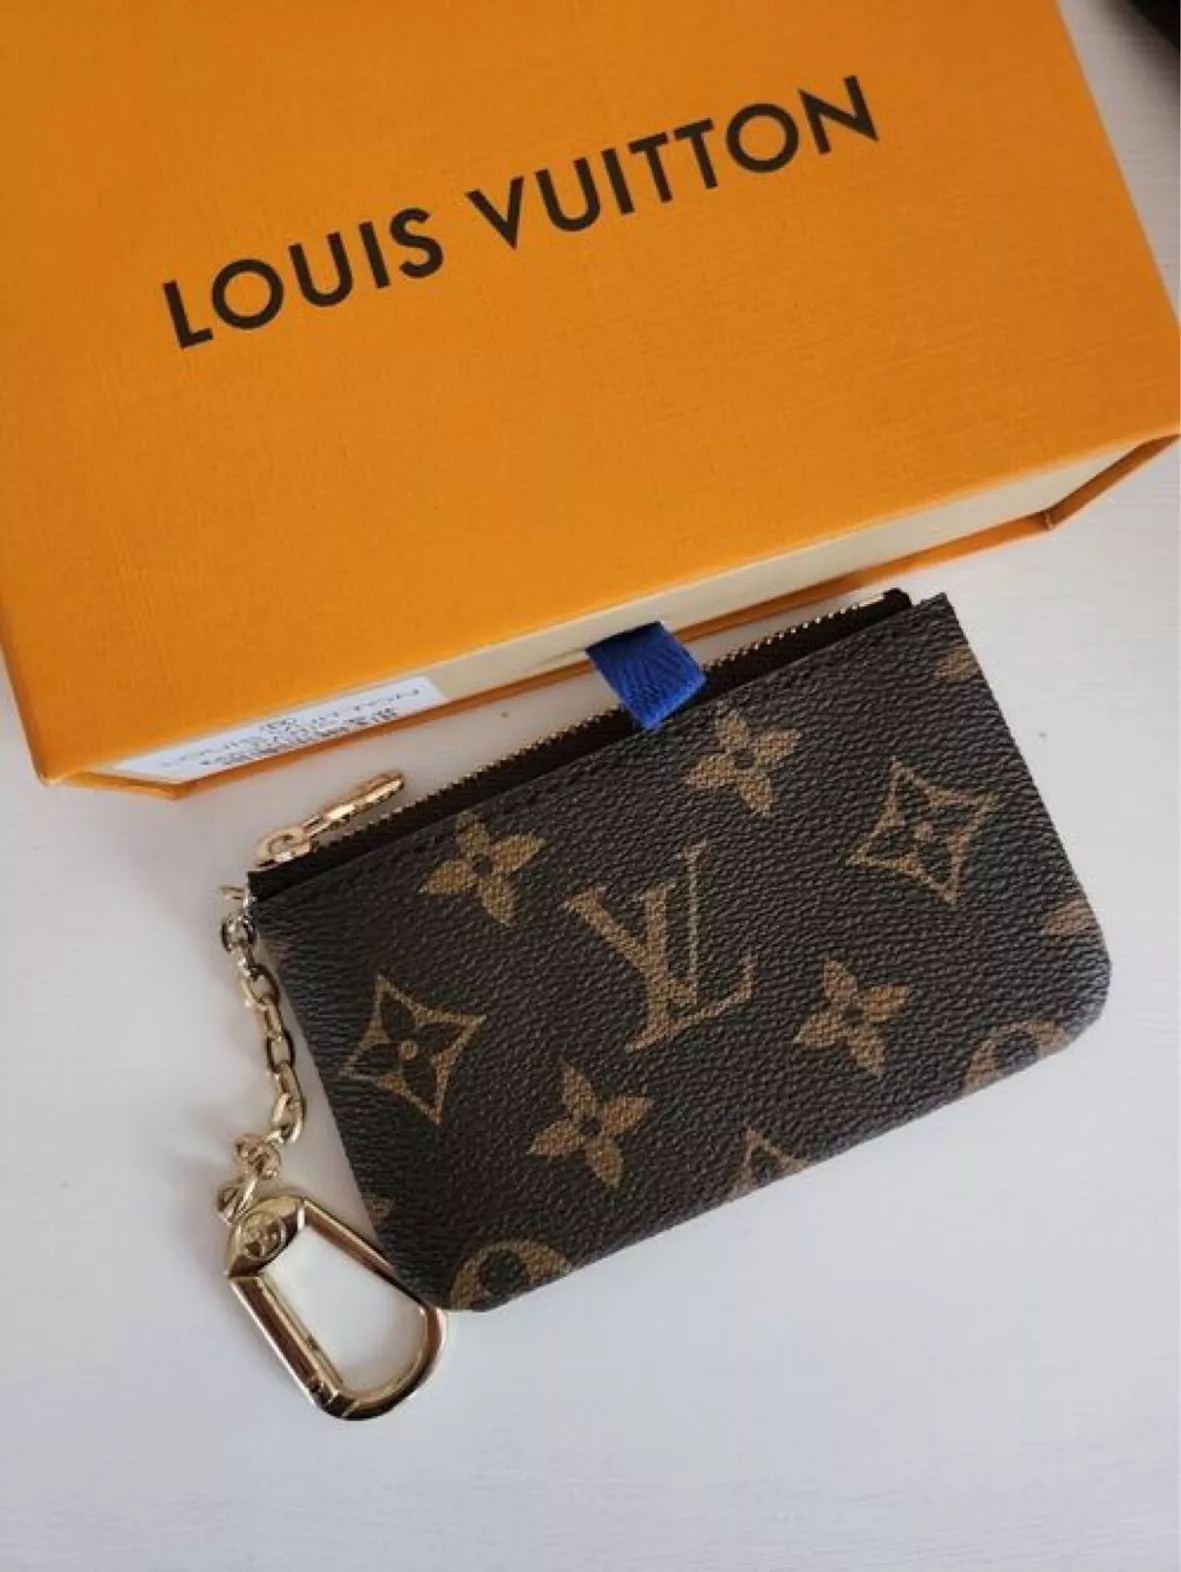 DHGATE LOUIS VUITTON HAUL  Louis Vuitton Key Pouch Unboxing And